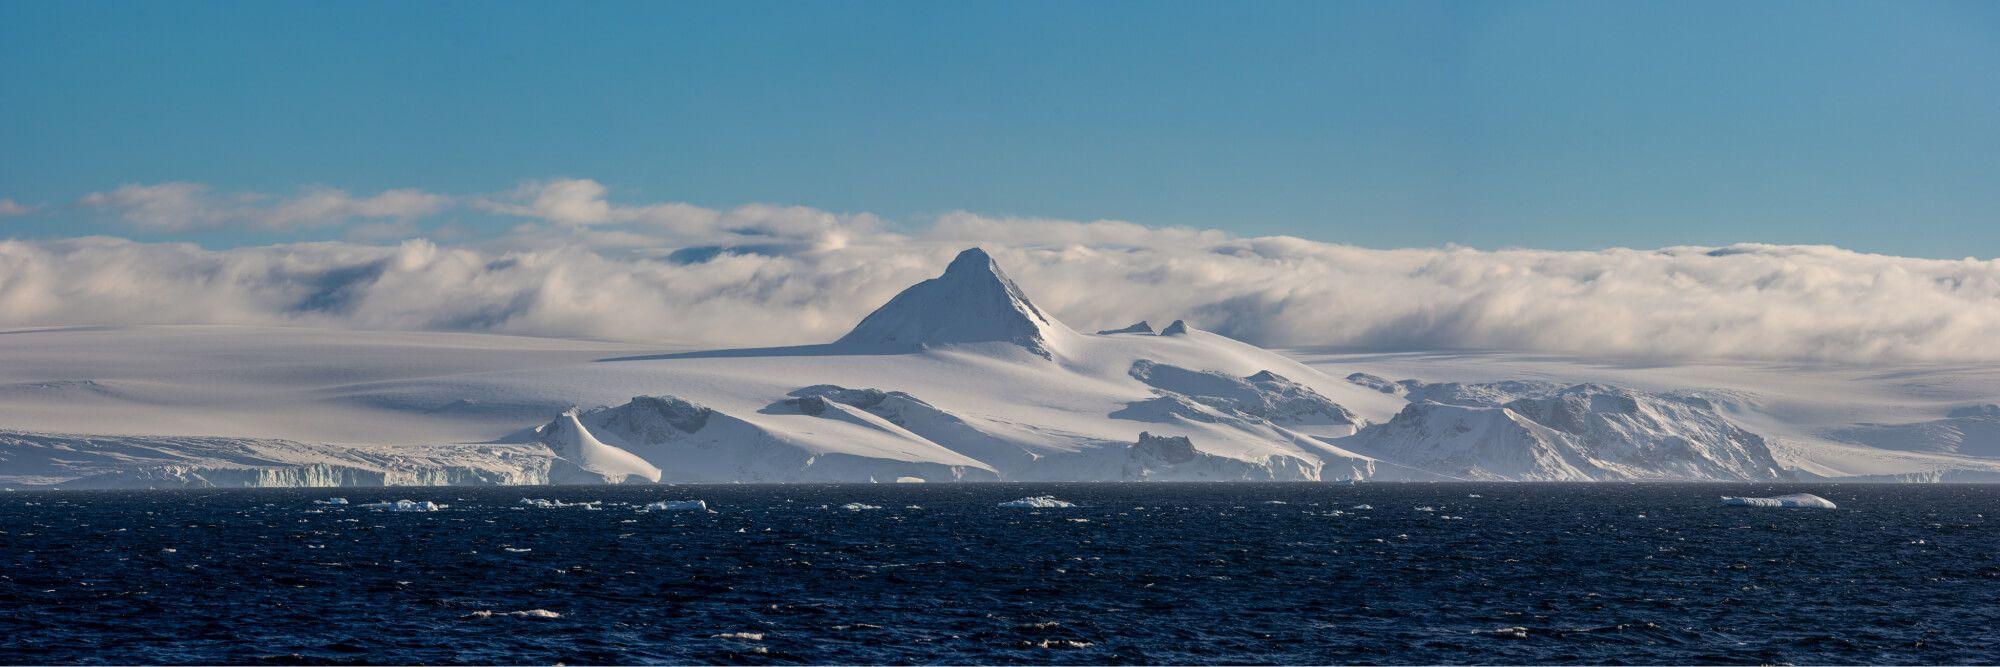 القارة البيضاء، القطب الجنوبي.  المصور: أرتيم شيستاكوف. المكان: القطب الجنوبي.